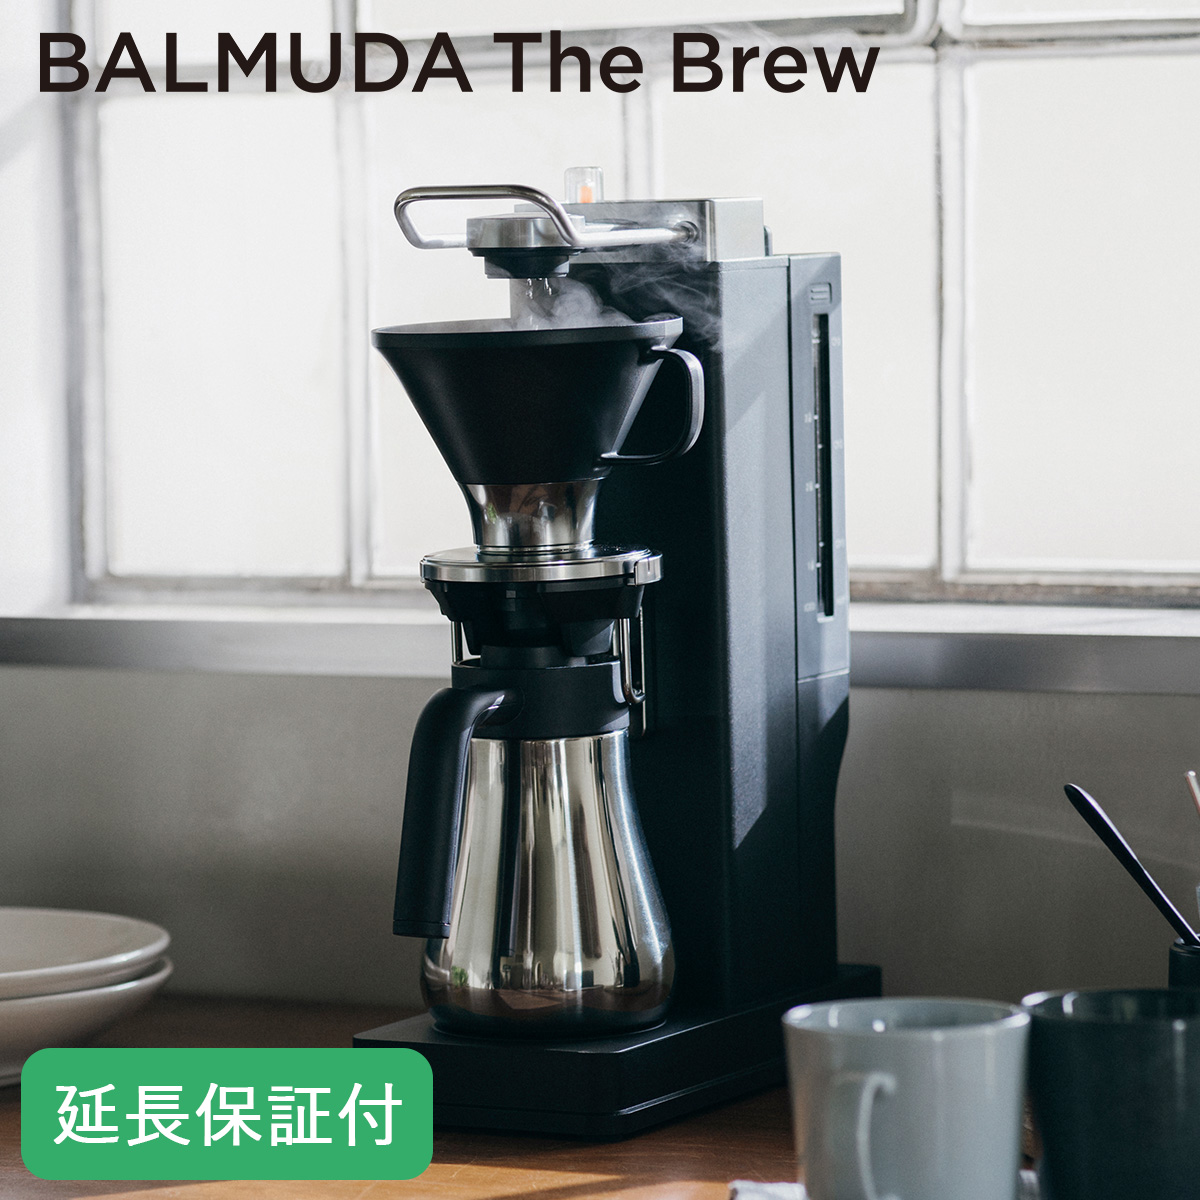 【5年保証付】[正規店]ザ・ブリュー コーヒーメーカー BALMUDA The Brew おしゃれ ブラック